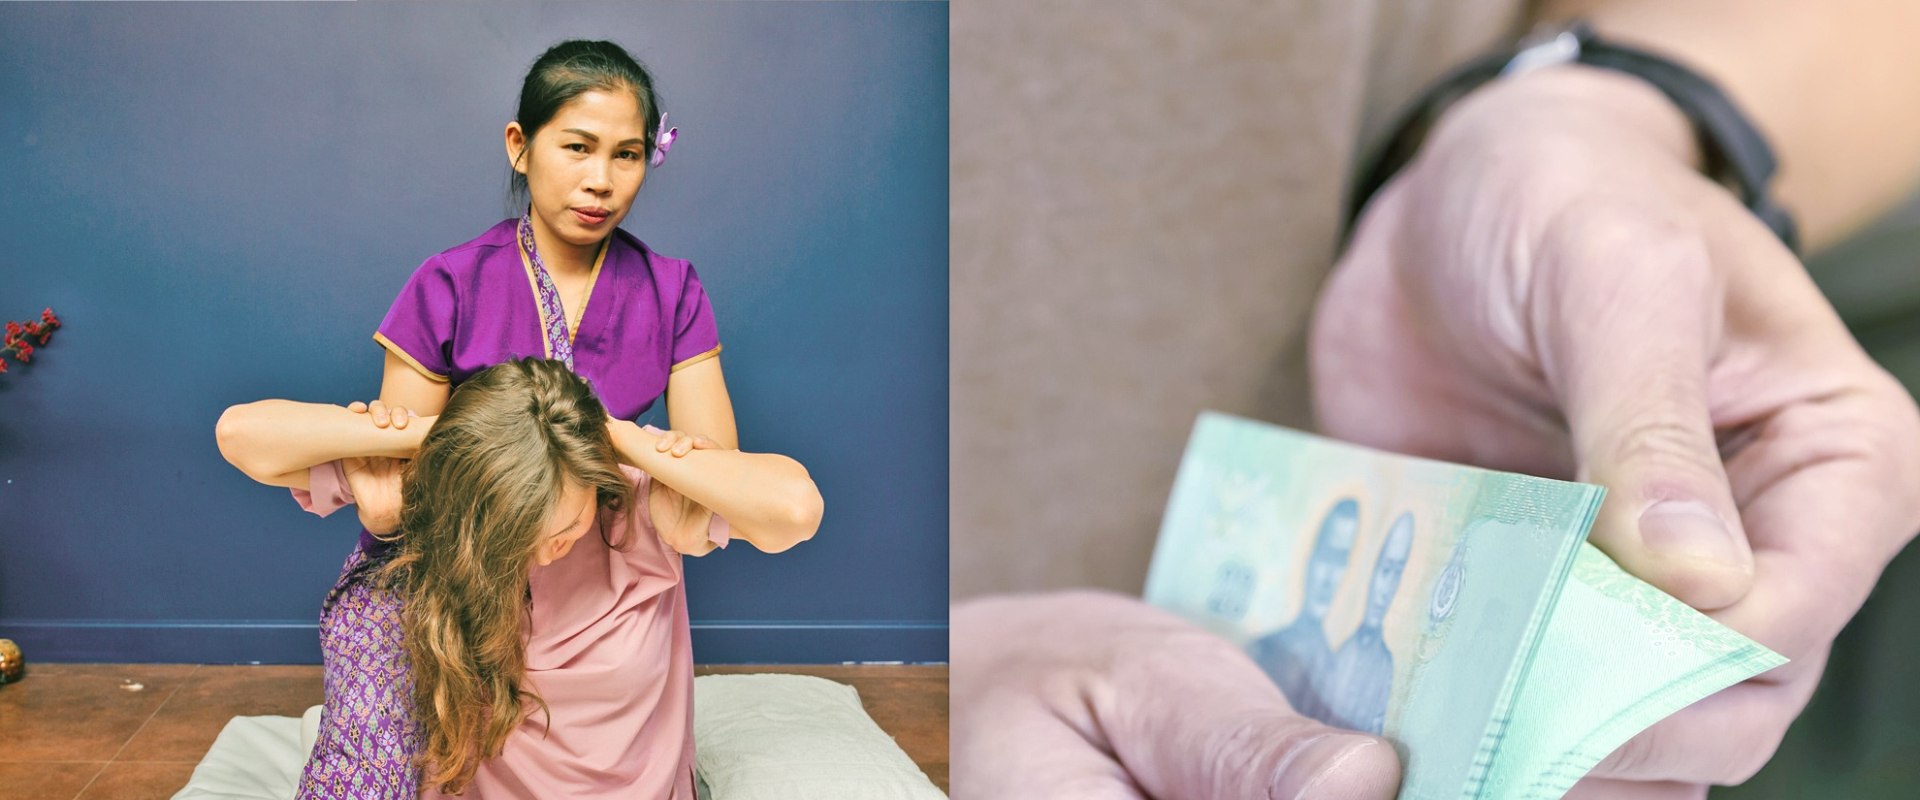 Wie viel kostet eine thailändische massage in thailand?